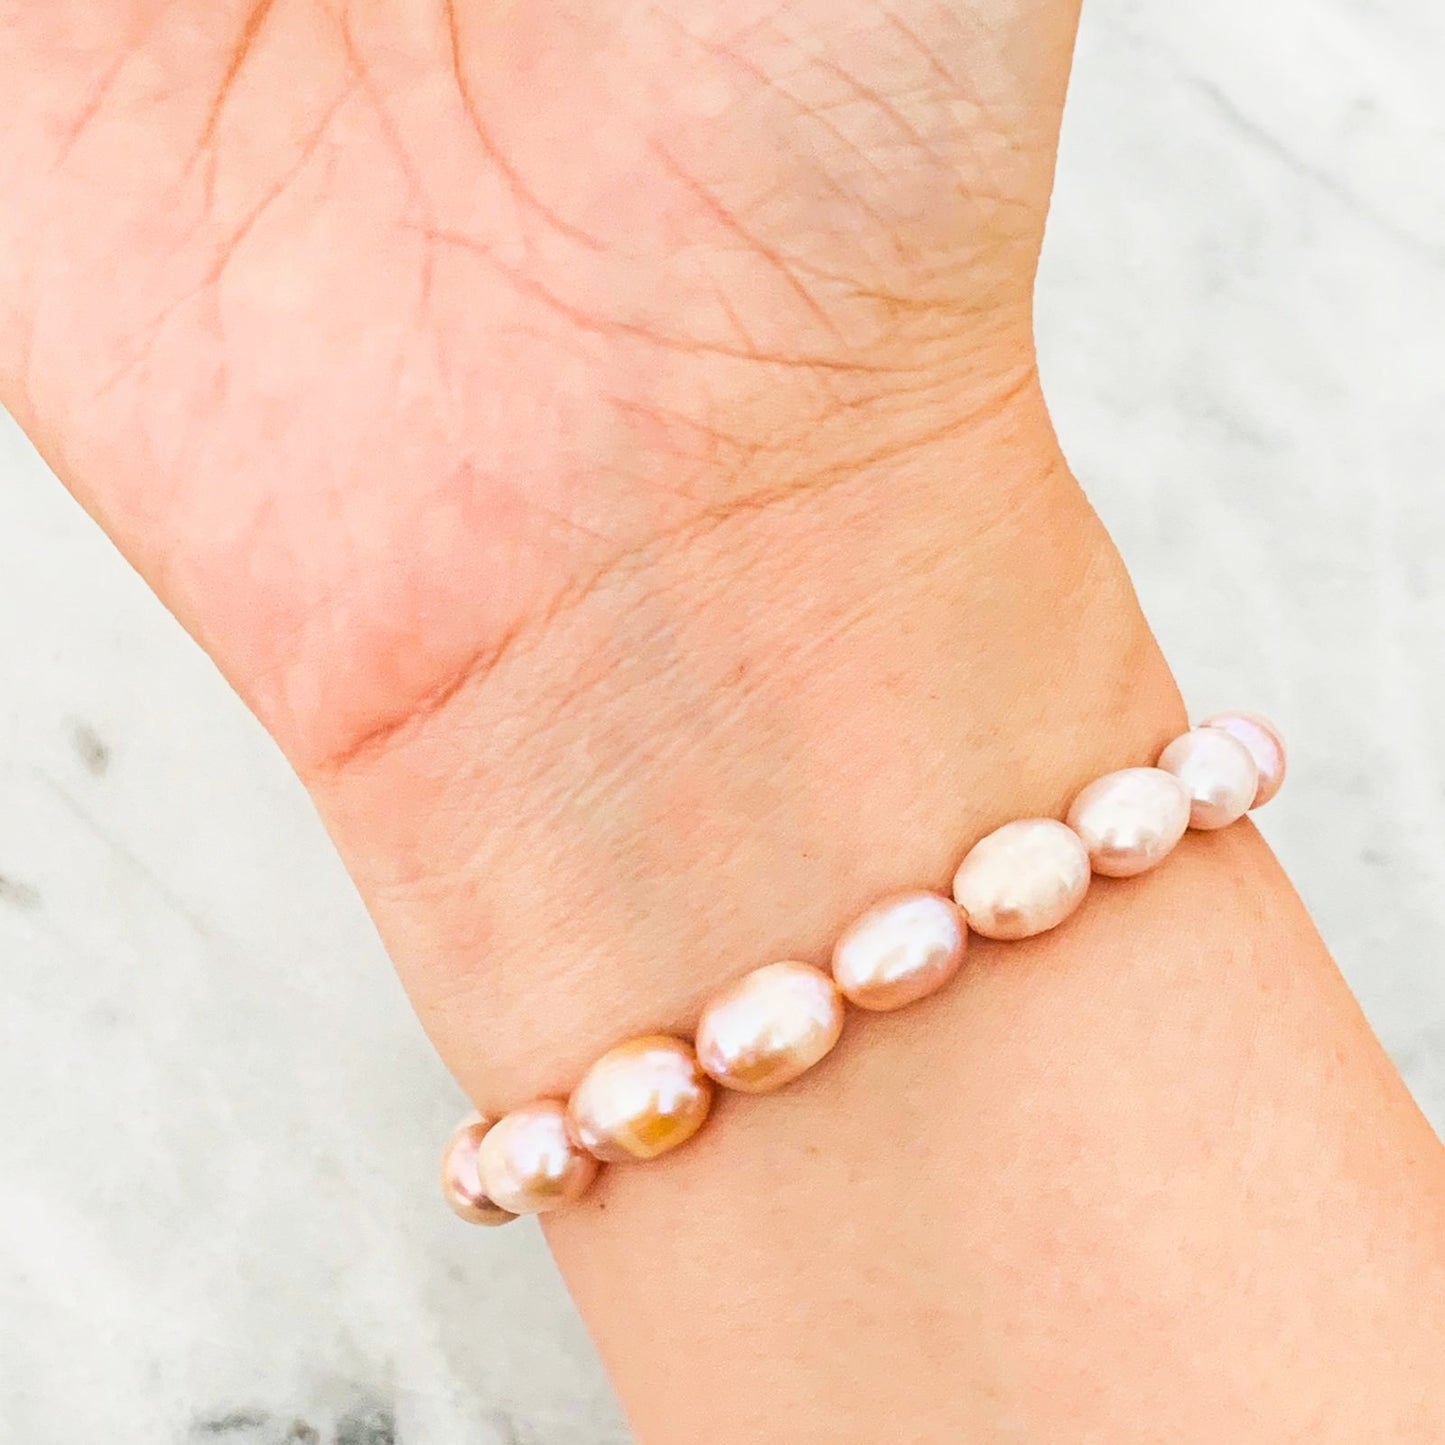 Jade & Pearls Bracelet